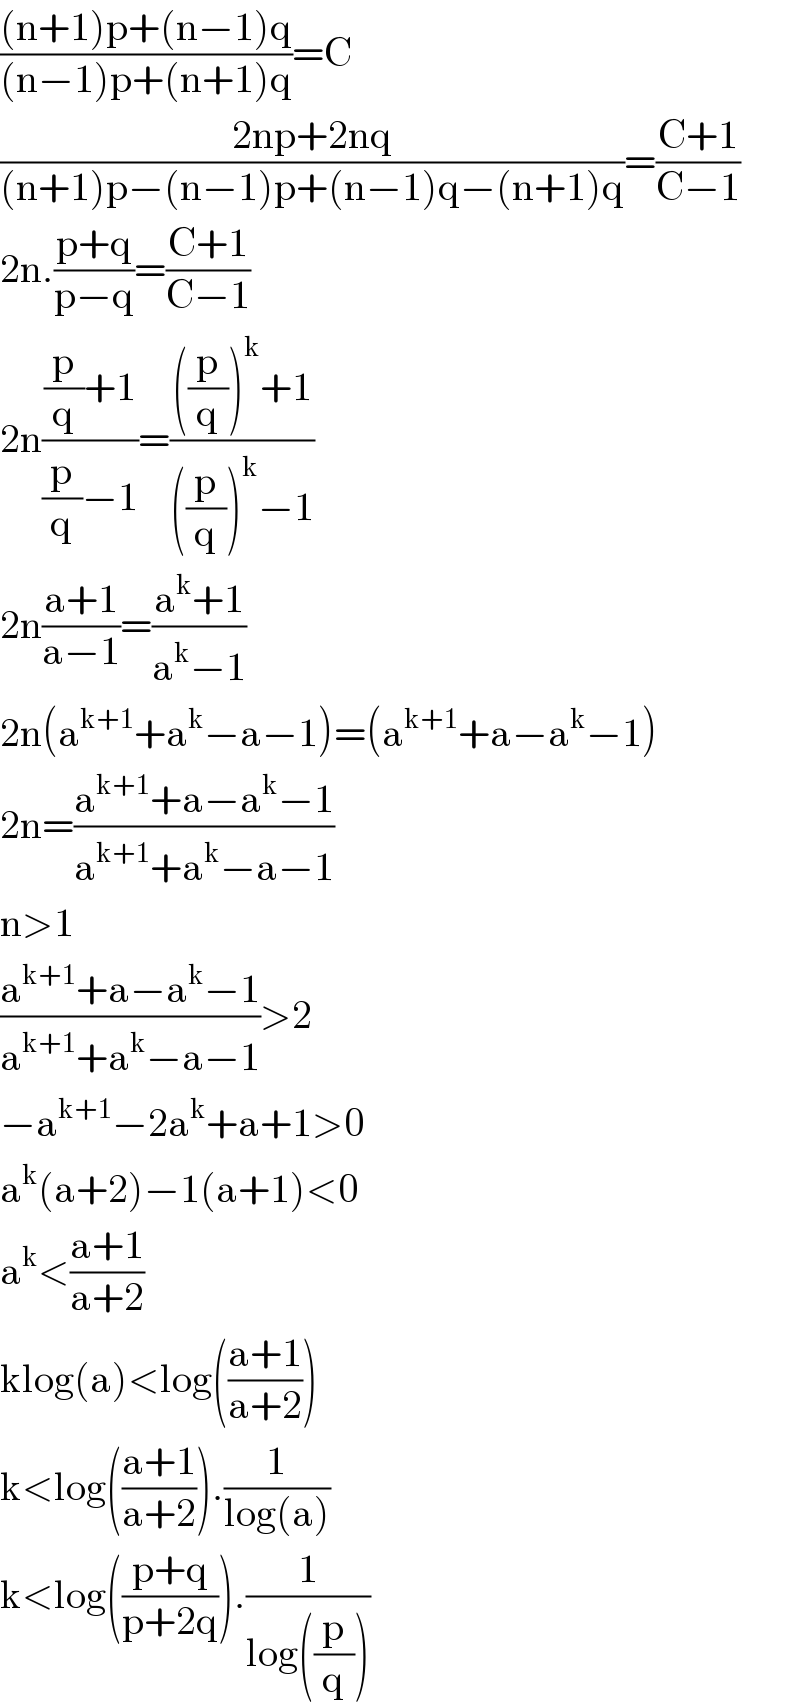 (((n+1)p+(n−1)q)/((n−1)p+(n+1)q))=C  ((2np+2nq)/((n+1)p−(n−1)p+(n−1)q−(n+1)q))=((C+1)/(C−1))  2n.((p+q)/(p−q))=((C+1)/(C−1))  2n(((p/q)+1)/((p/q)−1))=((((p/q))^k +1)/(((p/q))^k −1))  2n((a+1)/(a−1))=((a^k +1)/(a^k −1))  2n(a^(k+1) +a^k −a−1)=(a^(k+1) +a−a^k −1)  2n=((a^(k+1) +a−a^k −1)/(a^(k+1) +a^k −a−1))  n>1  ((a^(k+1) +a−a^k −1)/(a^(k+1) +a^k −a−1))>2  −a^(k+1) −2a^k +a+1>0  a^k (a+2)−1(a+1)<0  a^k <((a+1)/(a+2))  klog(a)<log(((a+1)/(a+2)))  k<log(((a+1)/(a+2))).(1/(log(a)))  k<log(((p+q)/(p+2q))).(1/(log((p/q))))  